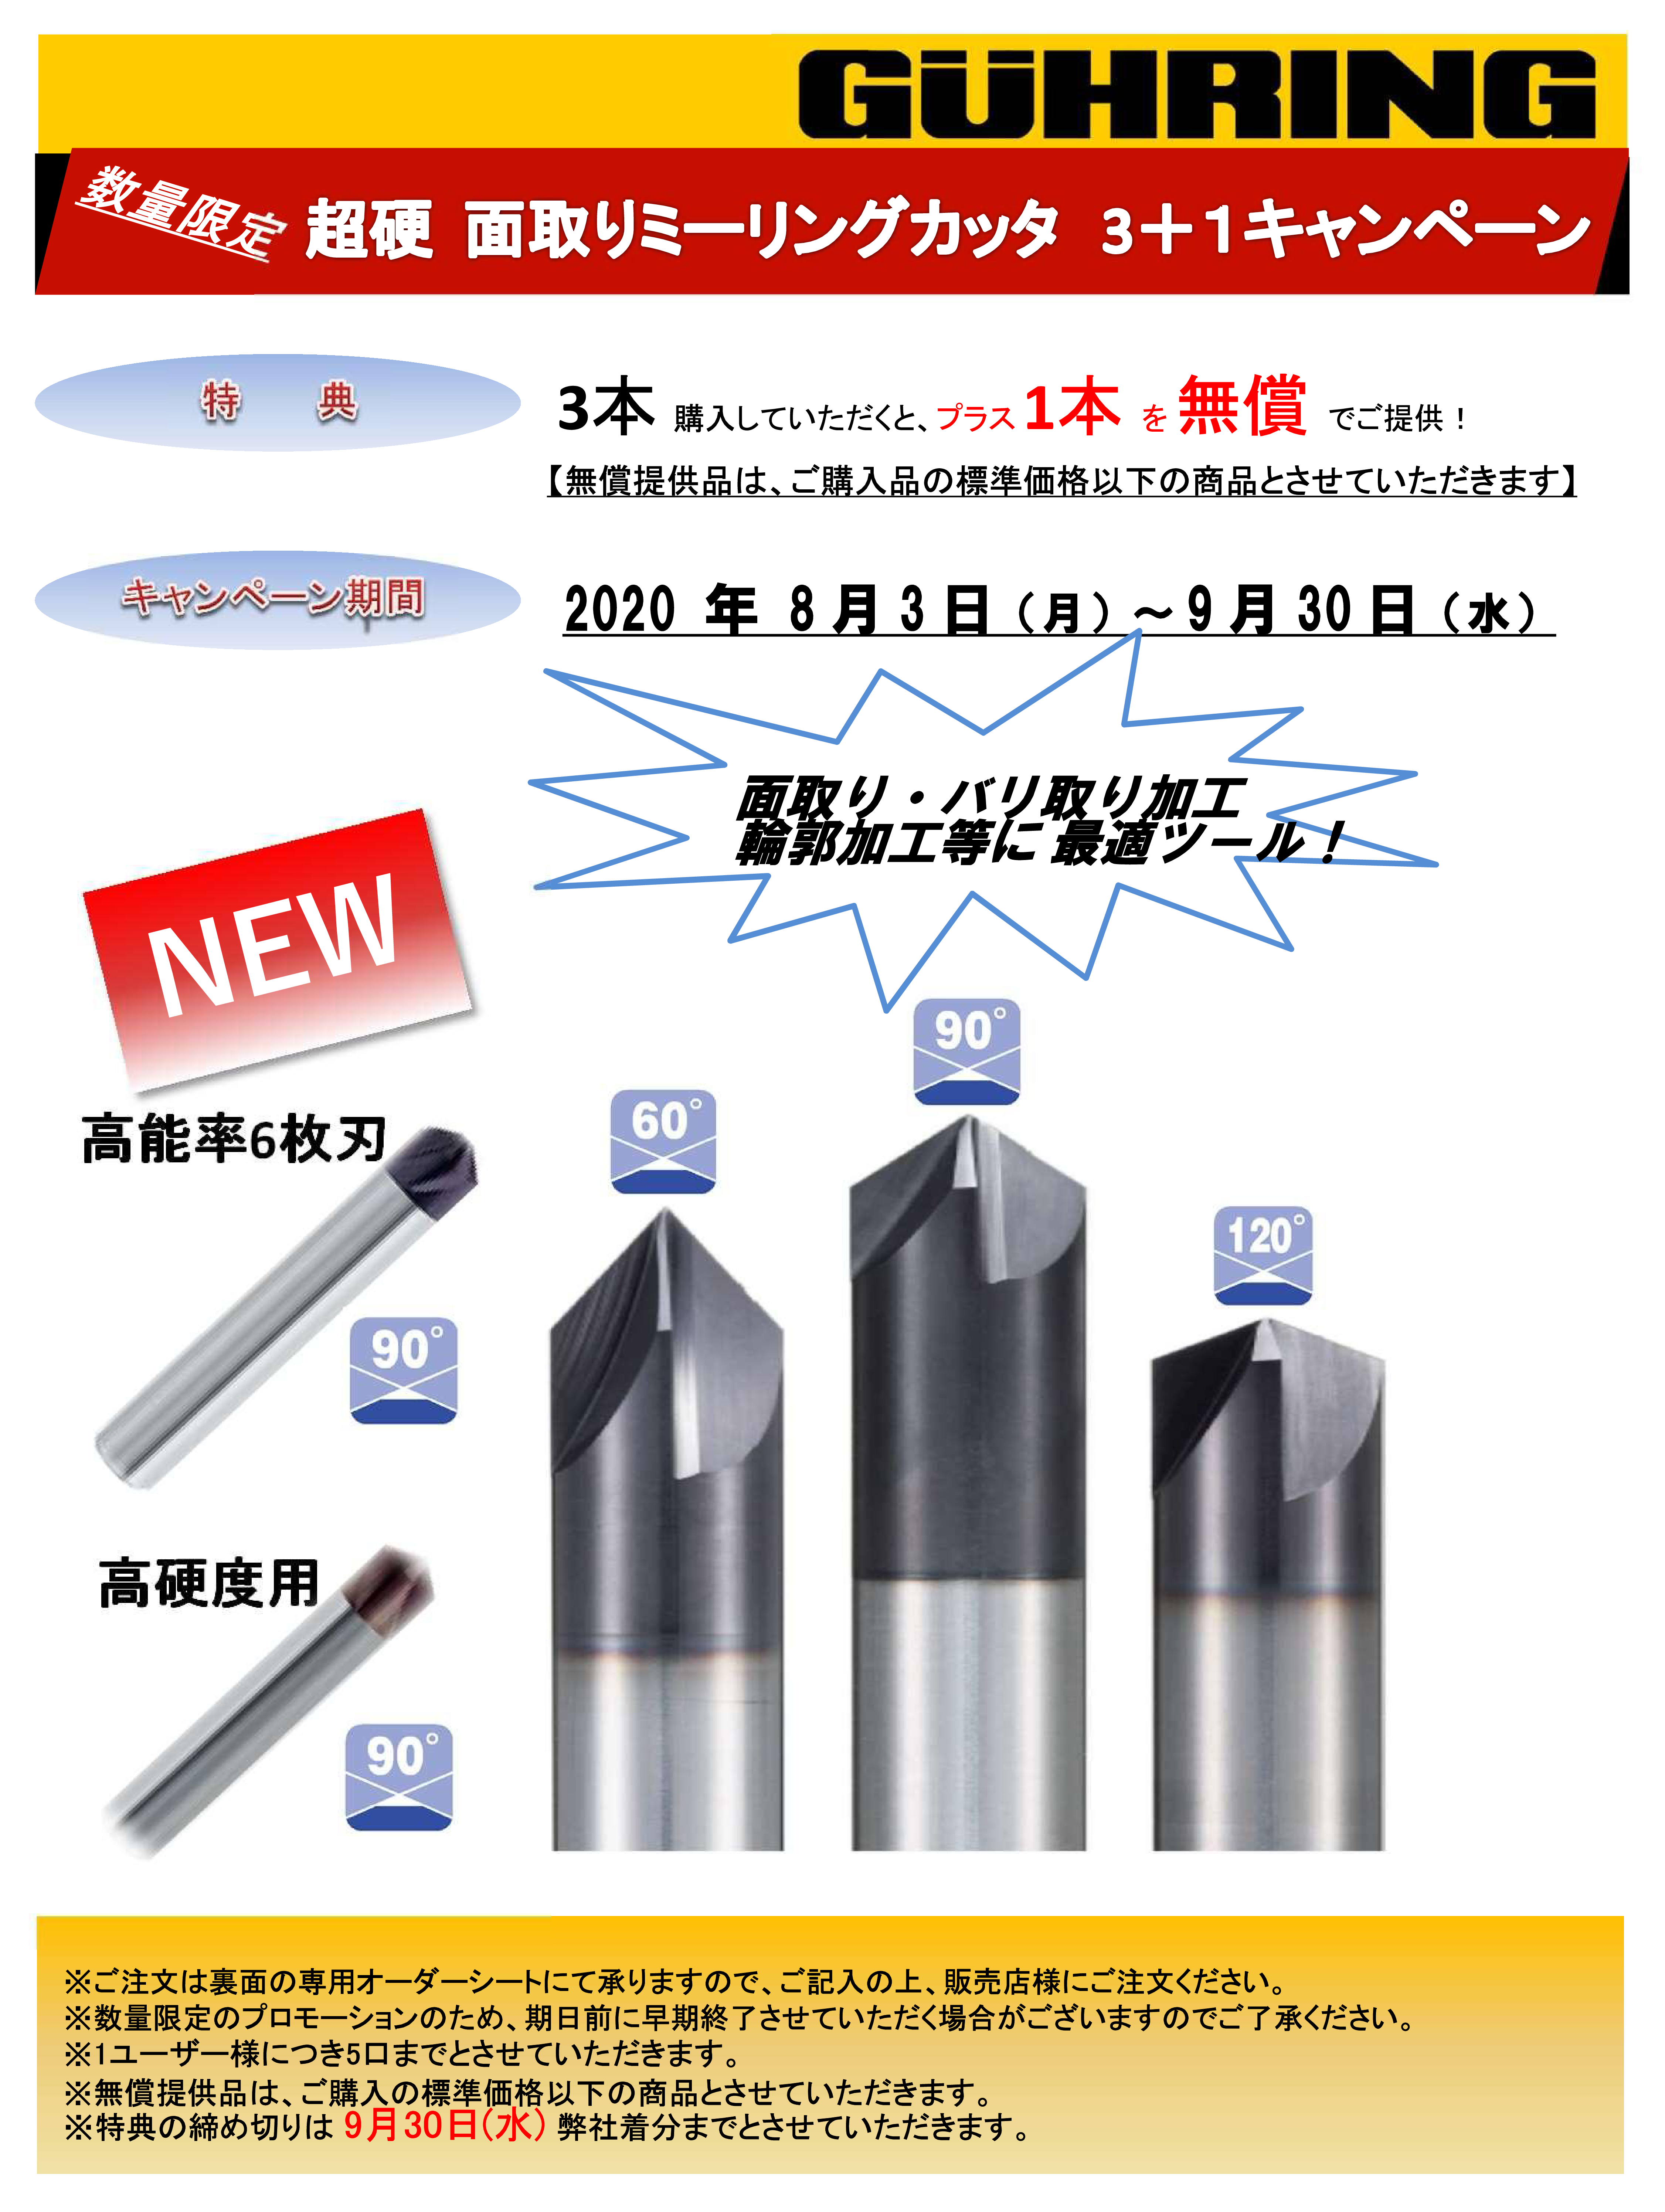 グーリング 超硬ソリッドスレッドミーリングカッター オイルホール穴付 M20×ピッチ2.5mm 3737 20.000 通販 